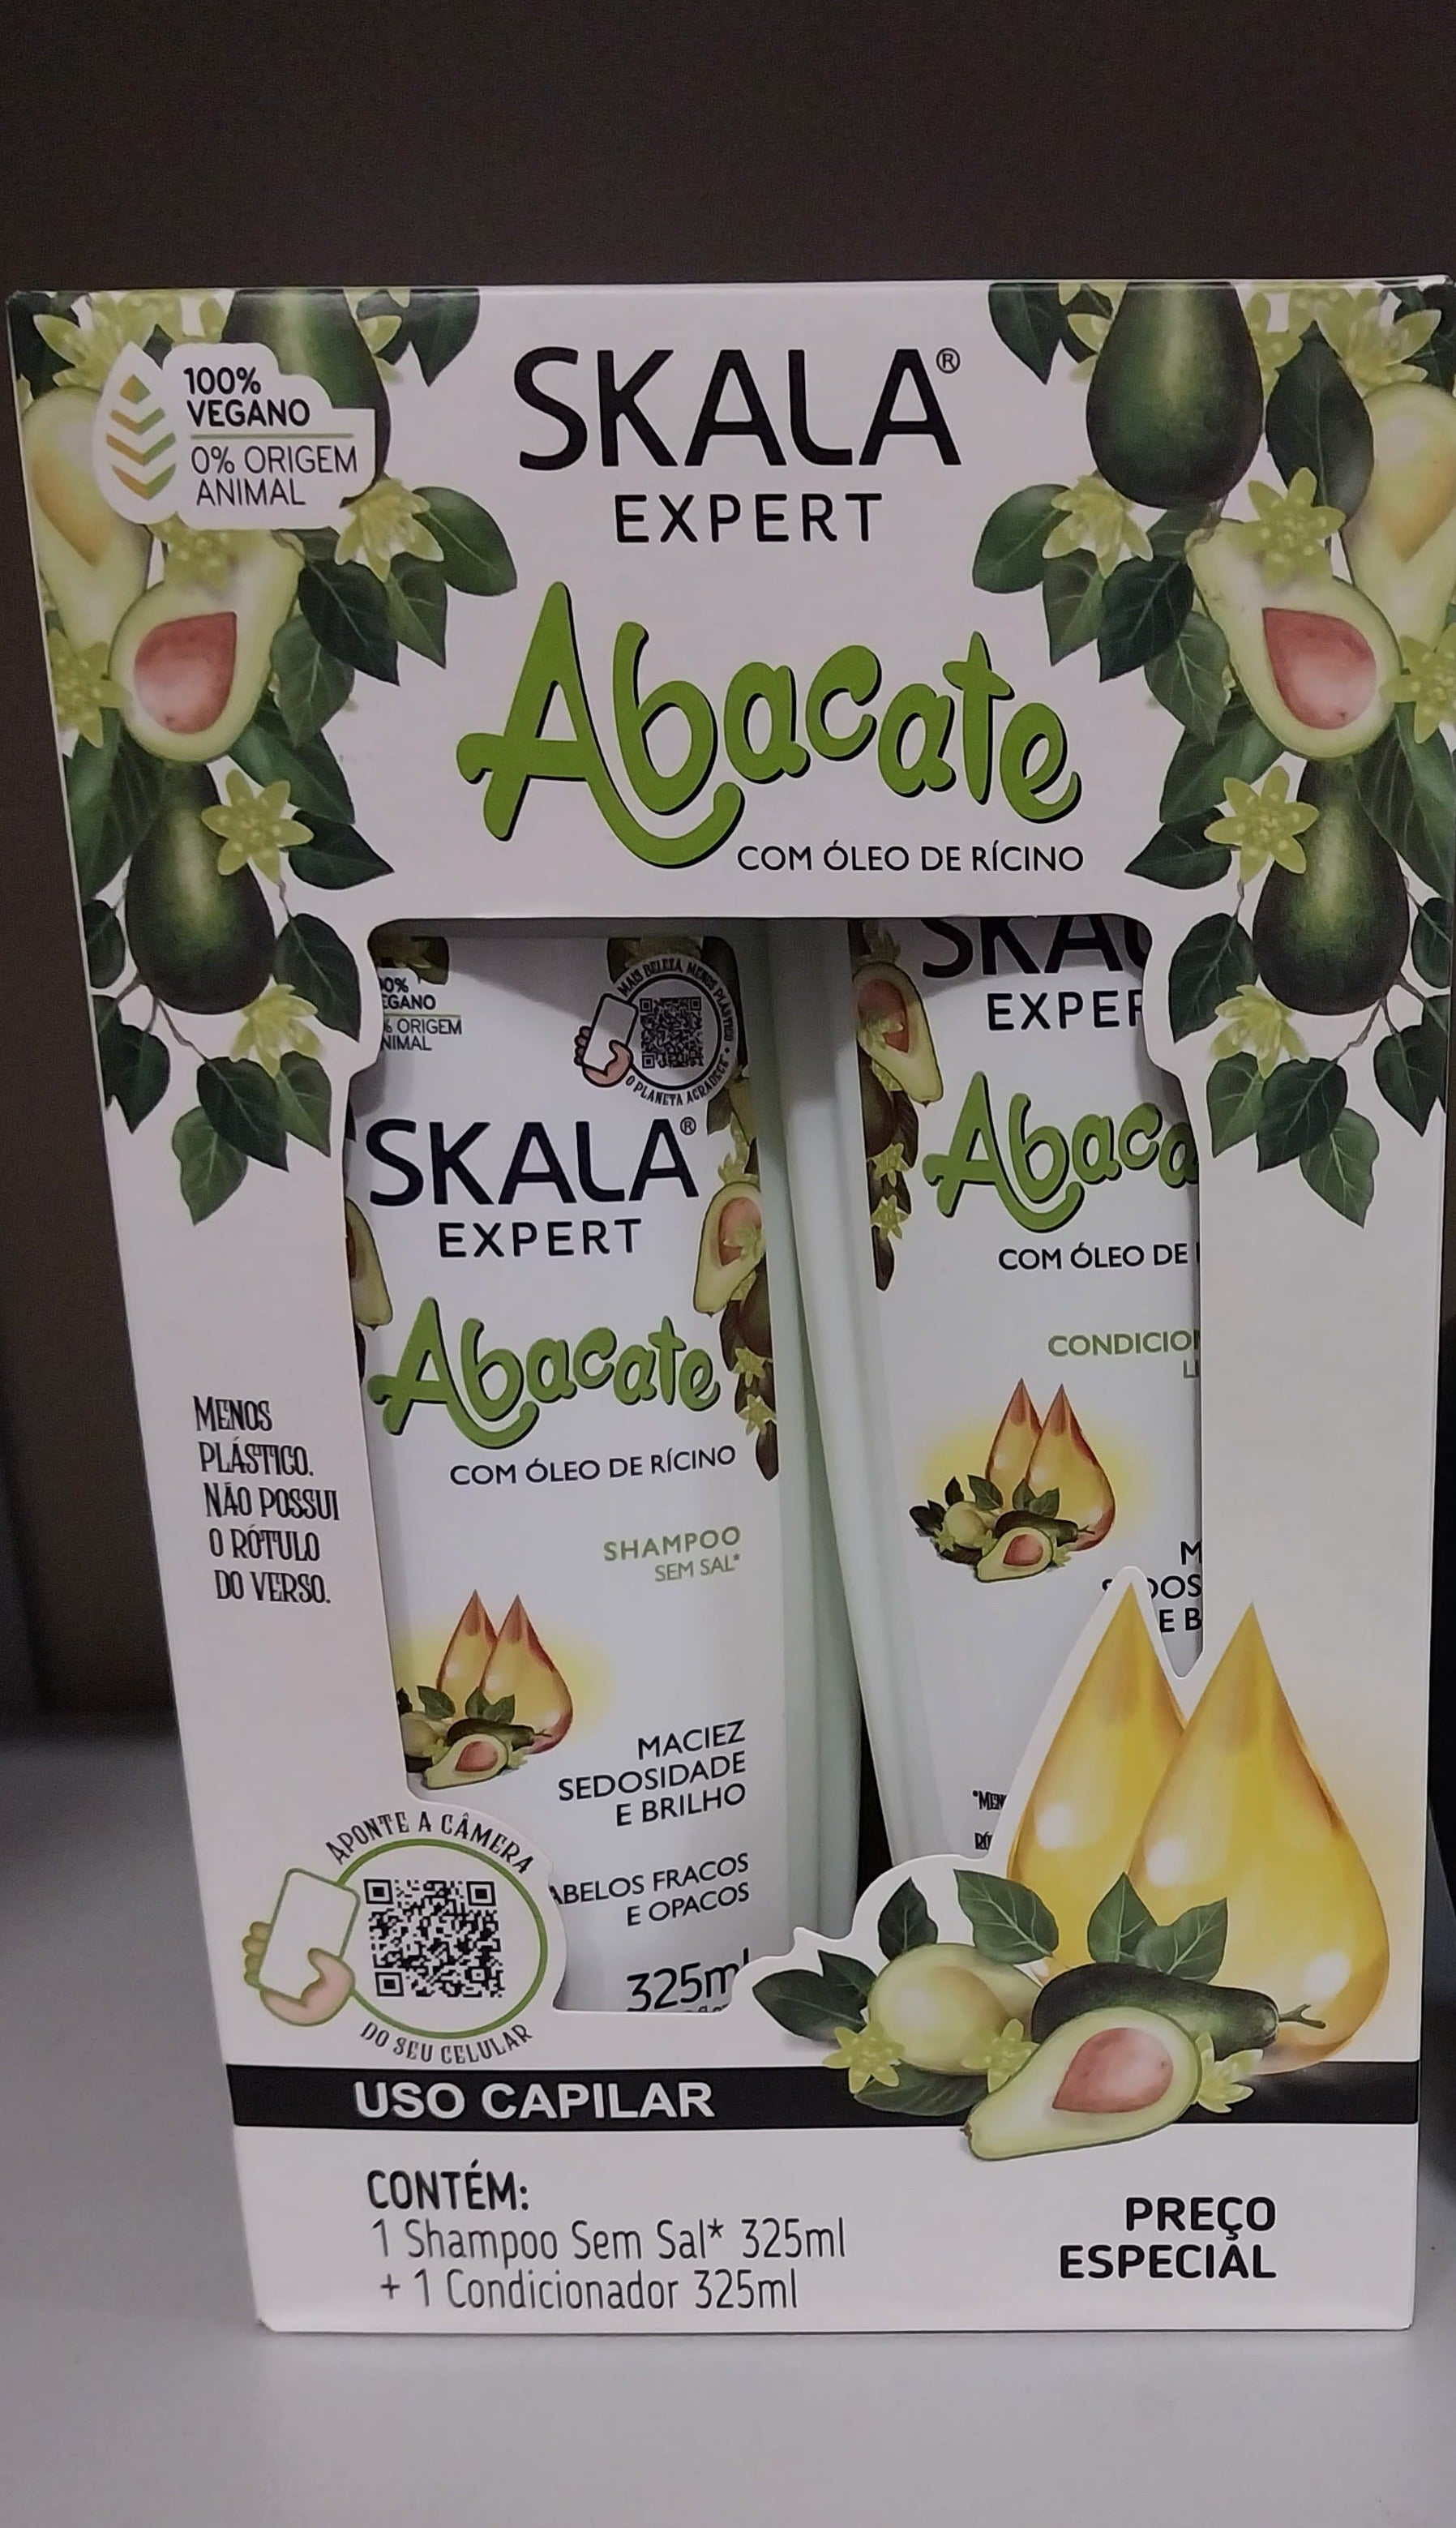 Skala Home Care Set Skala Expert Abacate Avocado Vegan Shampoo and Conditioner - Skala